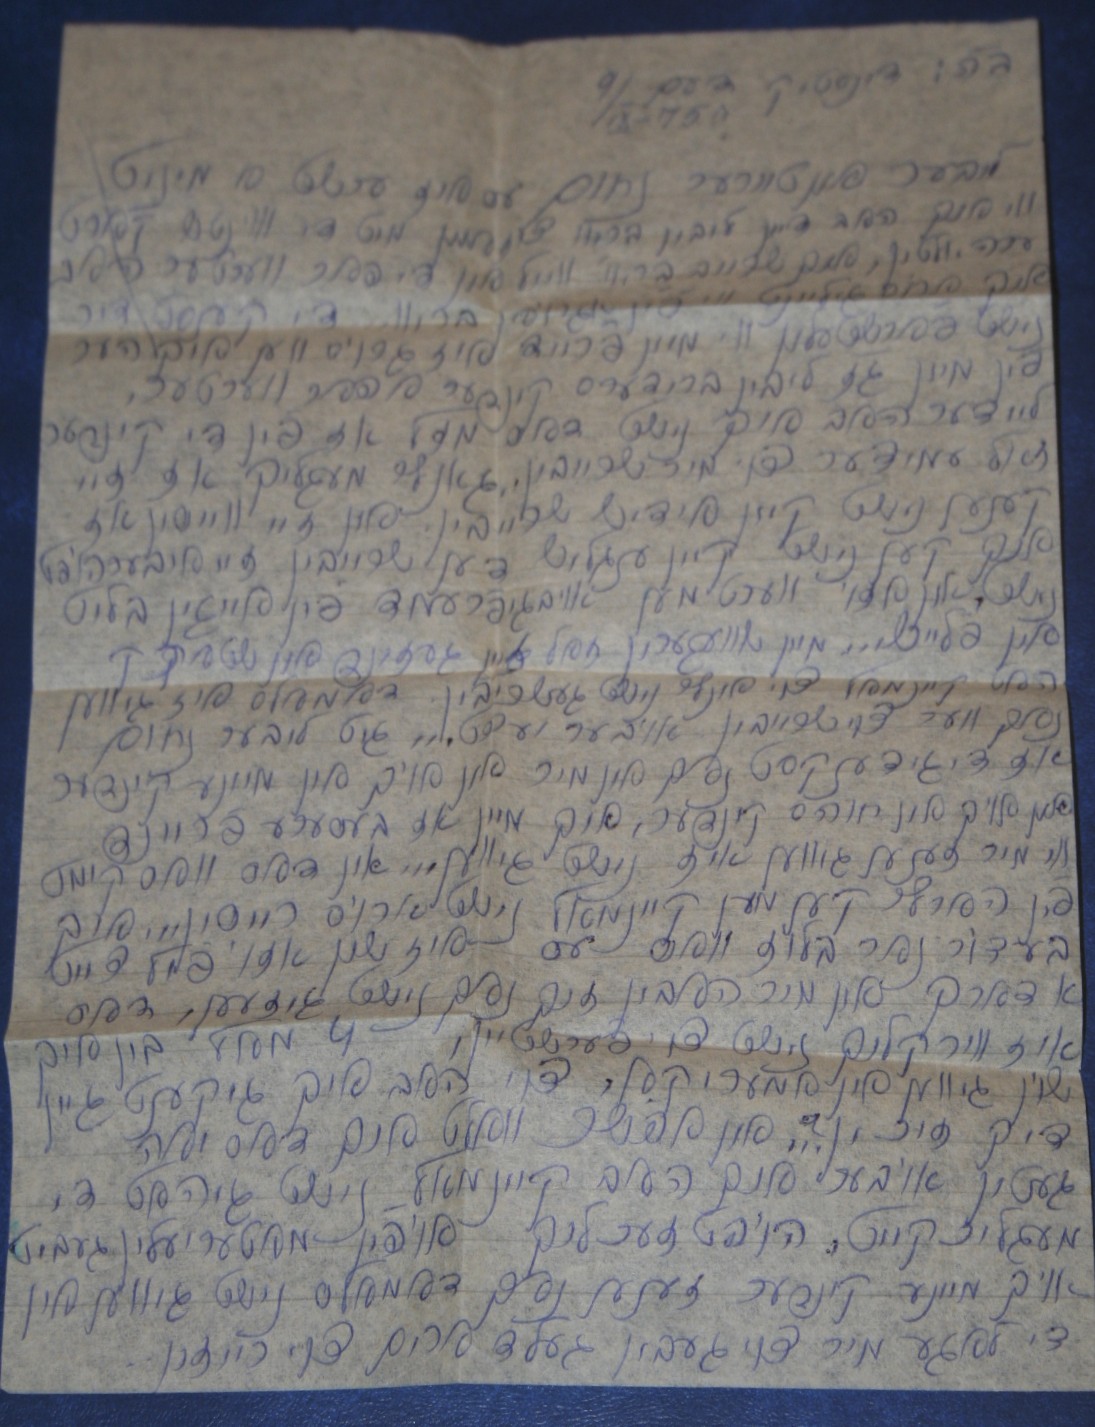 Rywka's letter